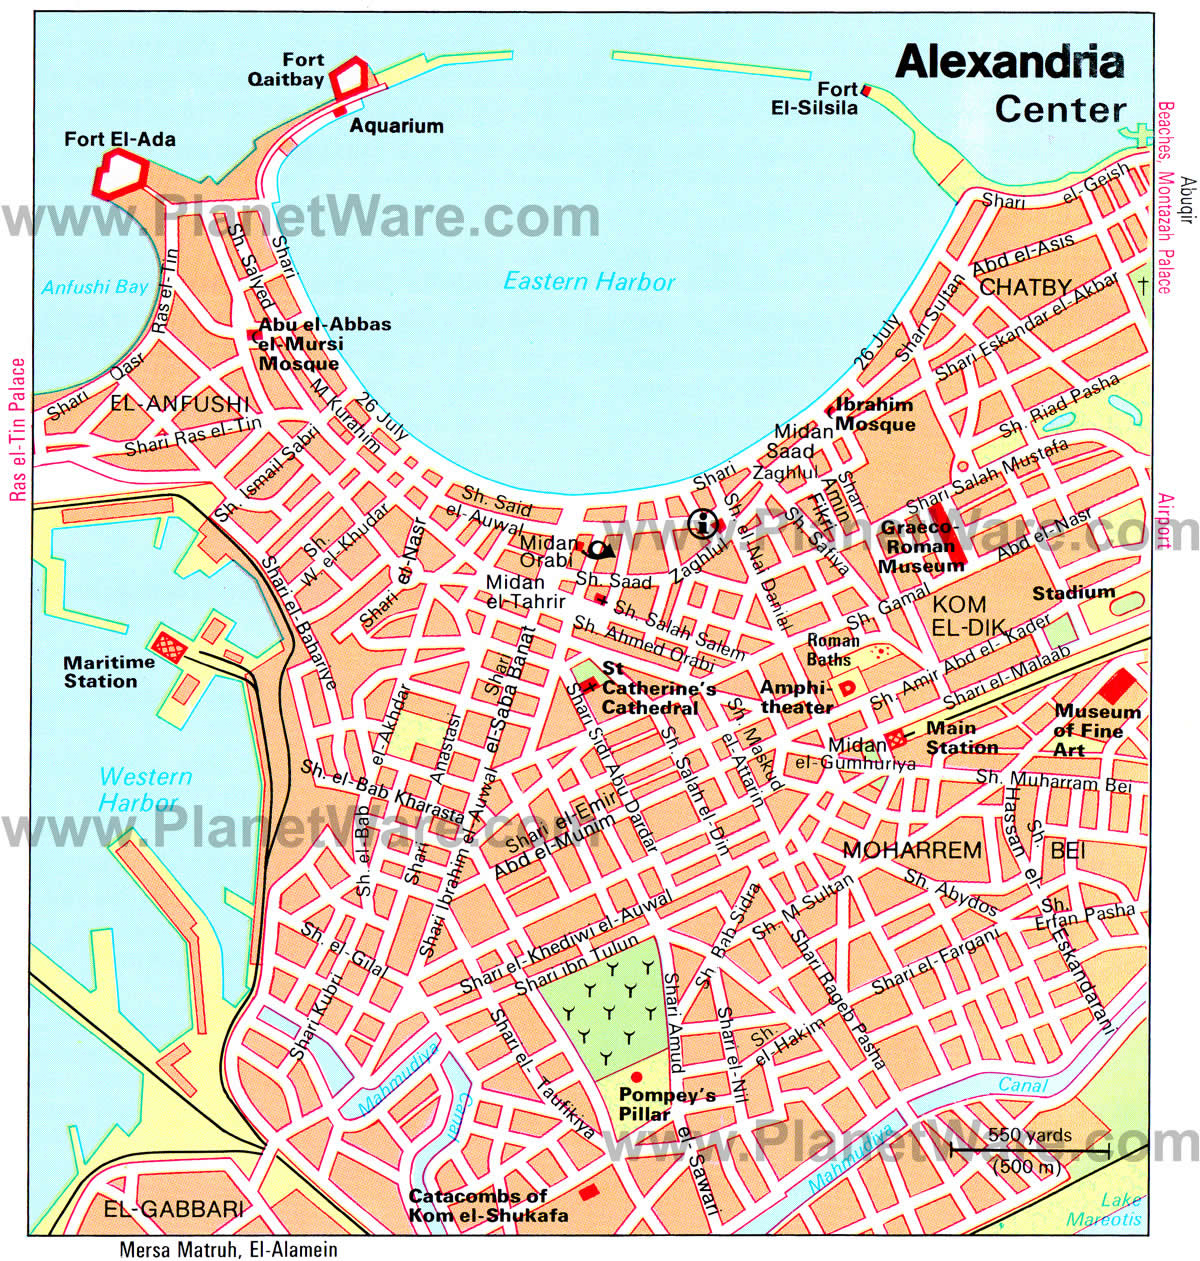 alexandria city center map